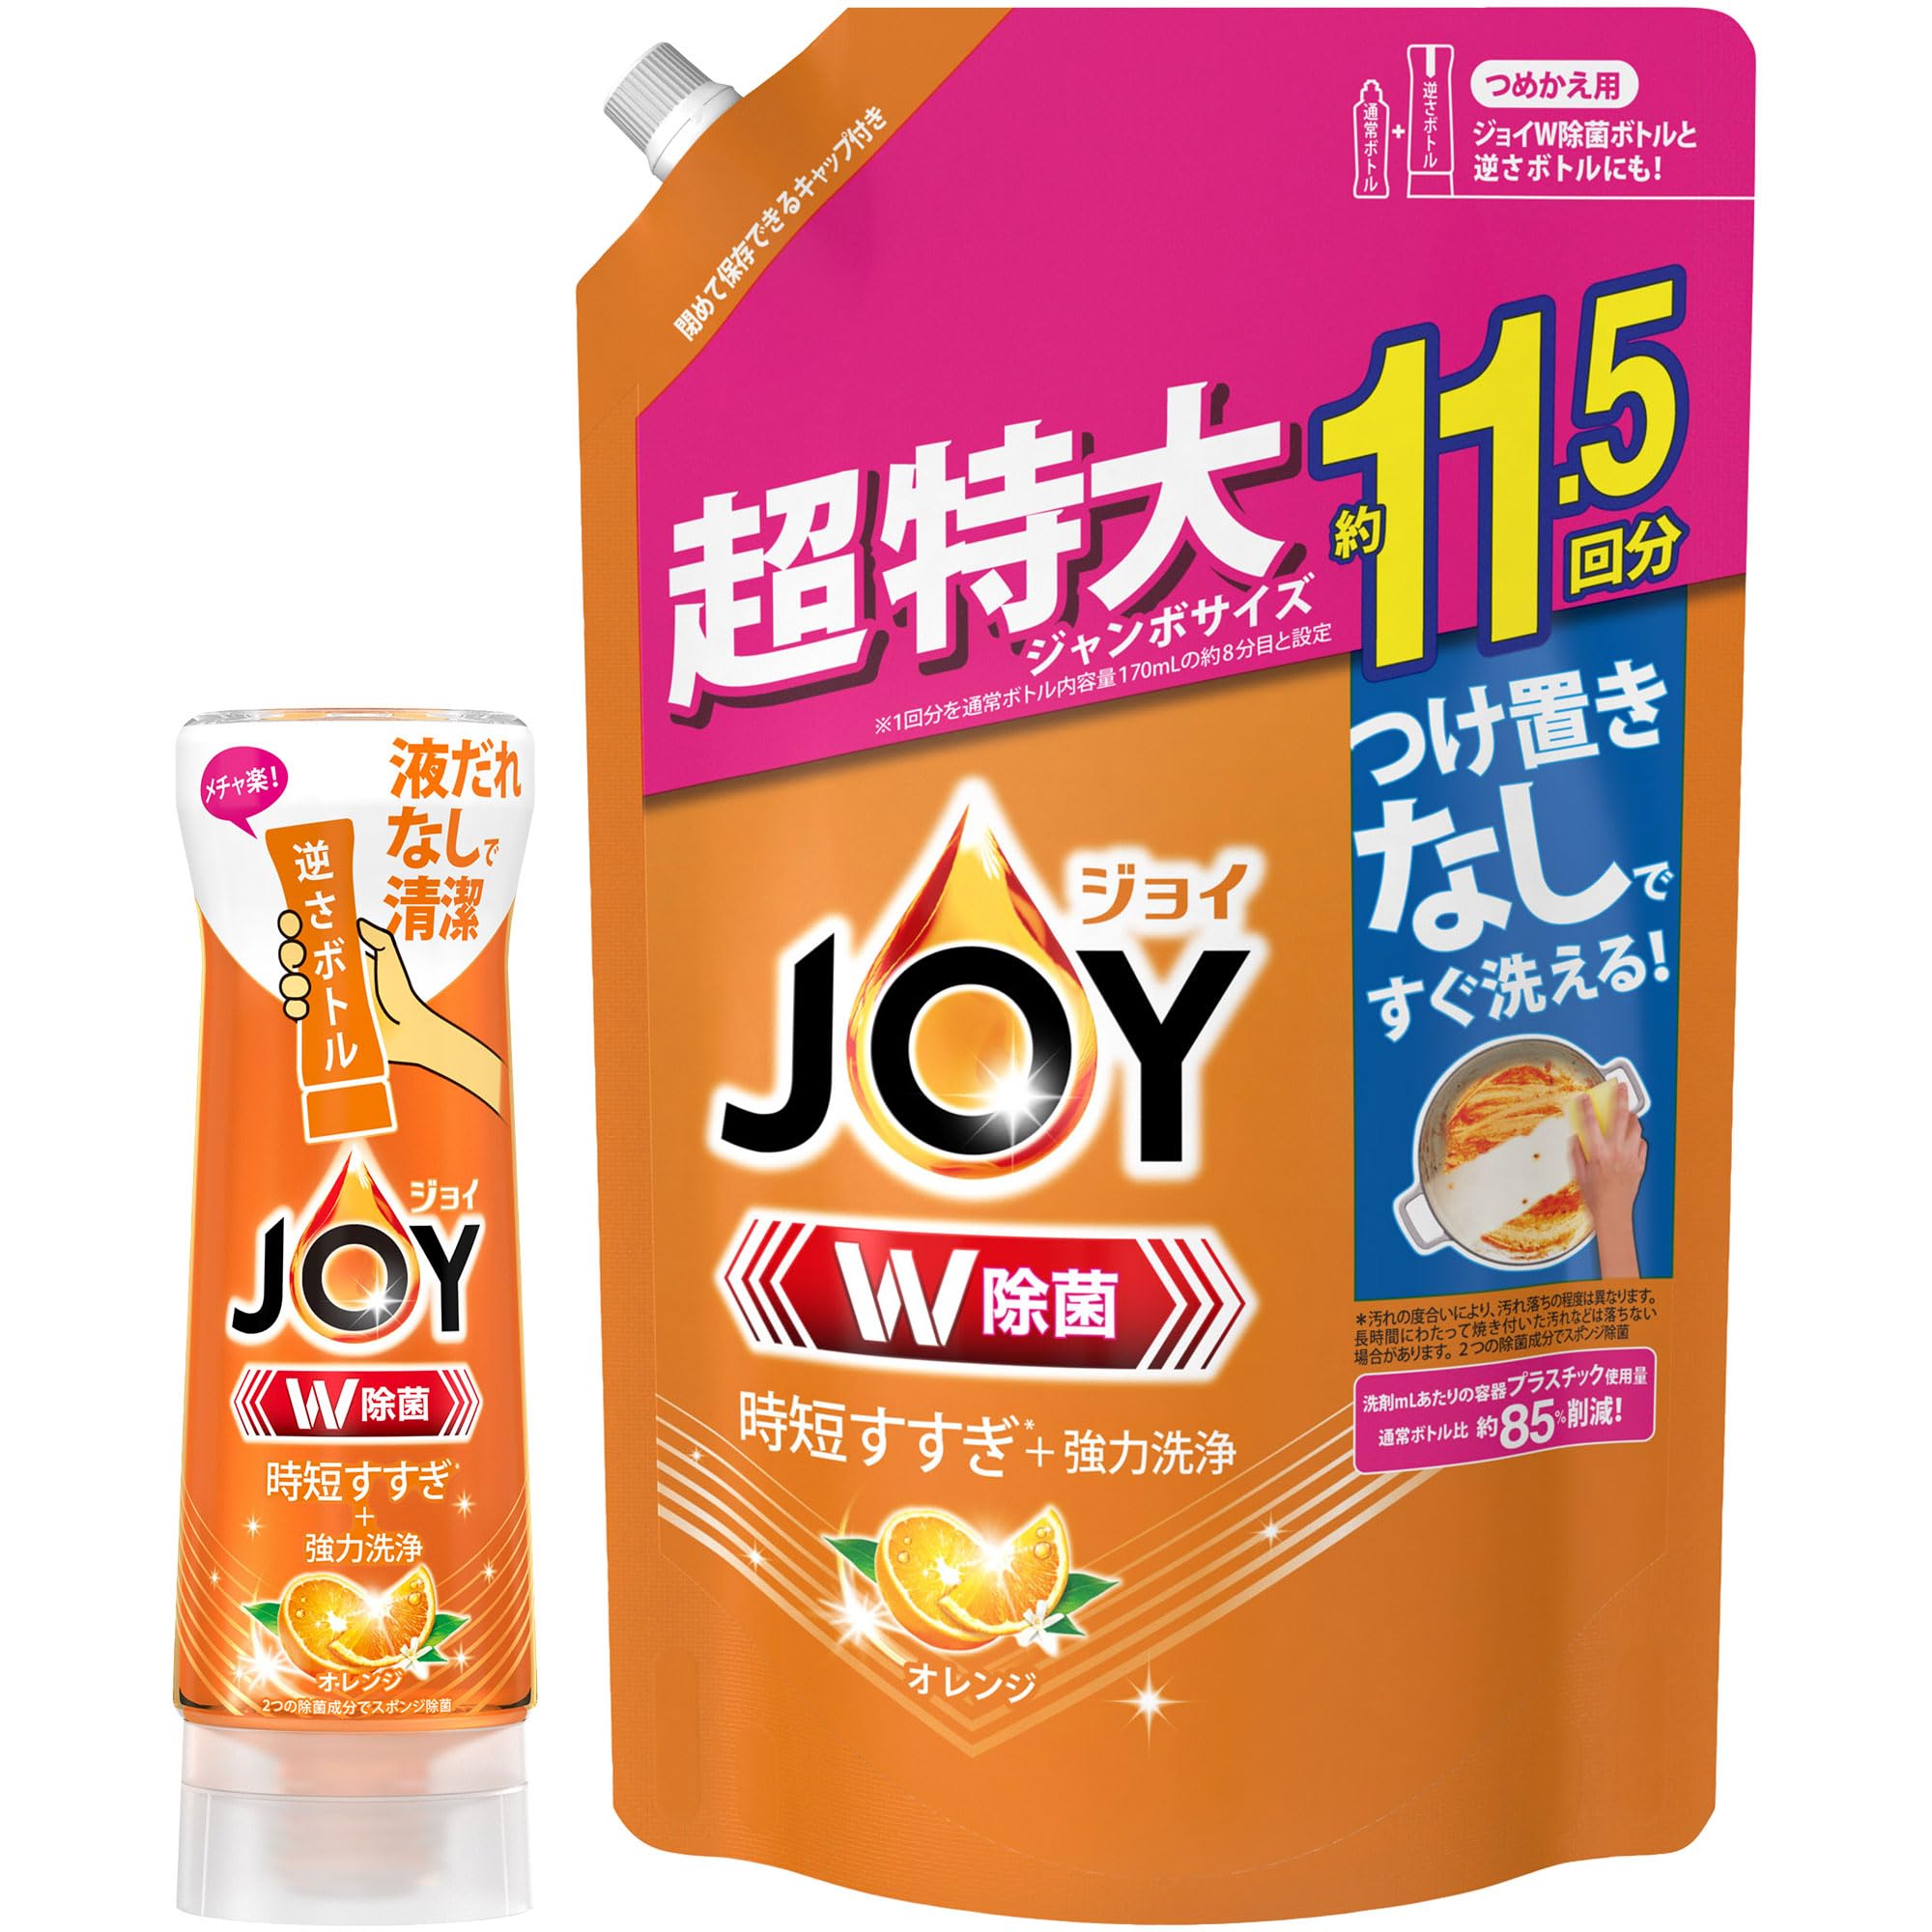 まとめ買い ジョイ W除菌 食器用洗剤 オレンジの香り 逆さボトル 290mL + 詰め替え 超特大ジャンボ 1490mL